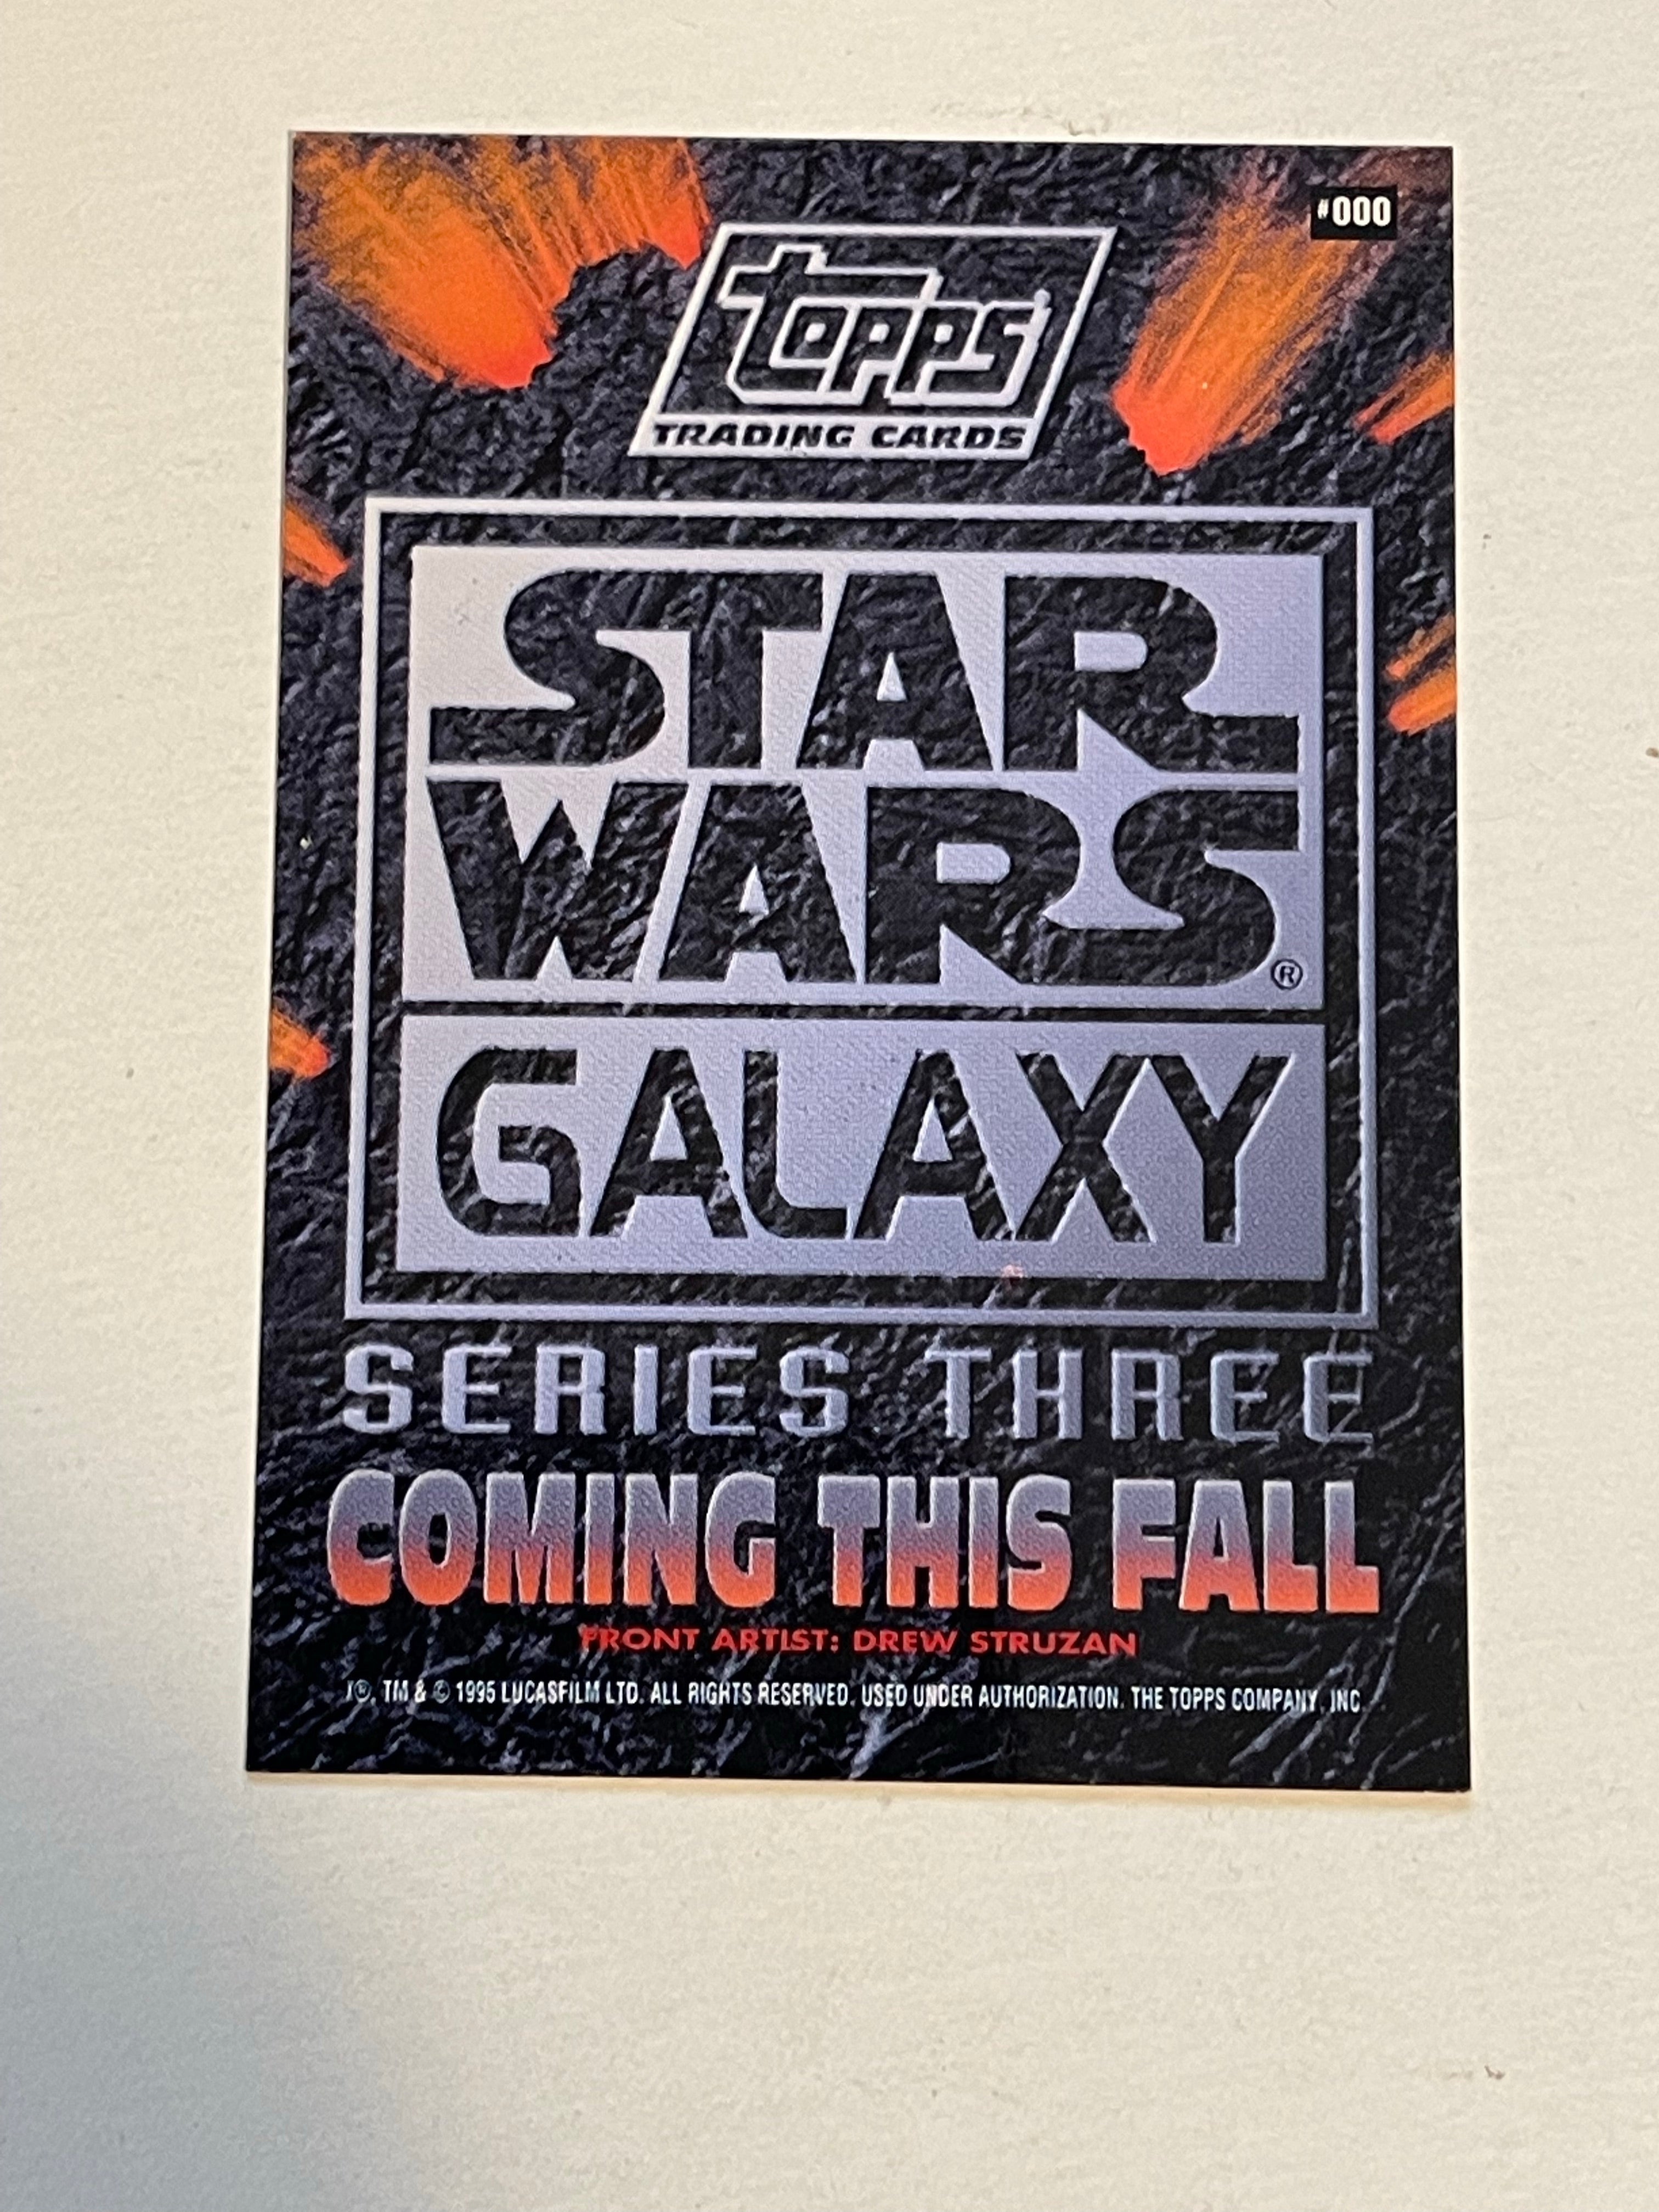 Star Wars Galaxy rare #000 promo card